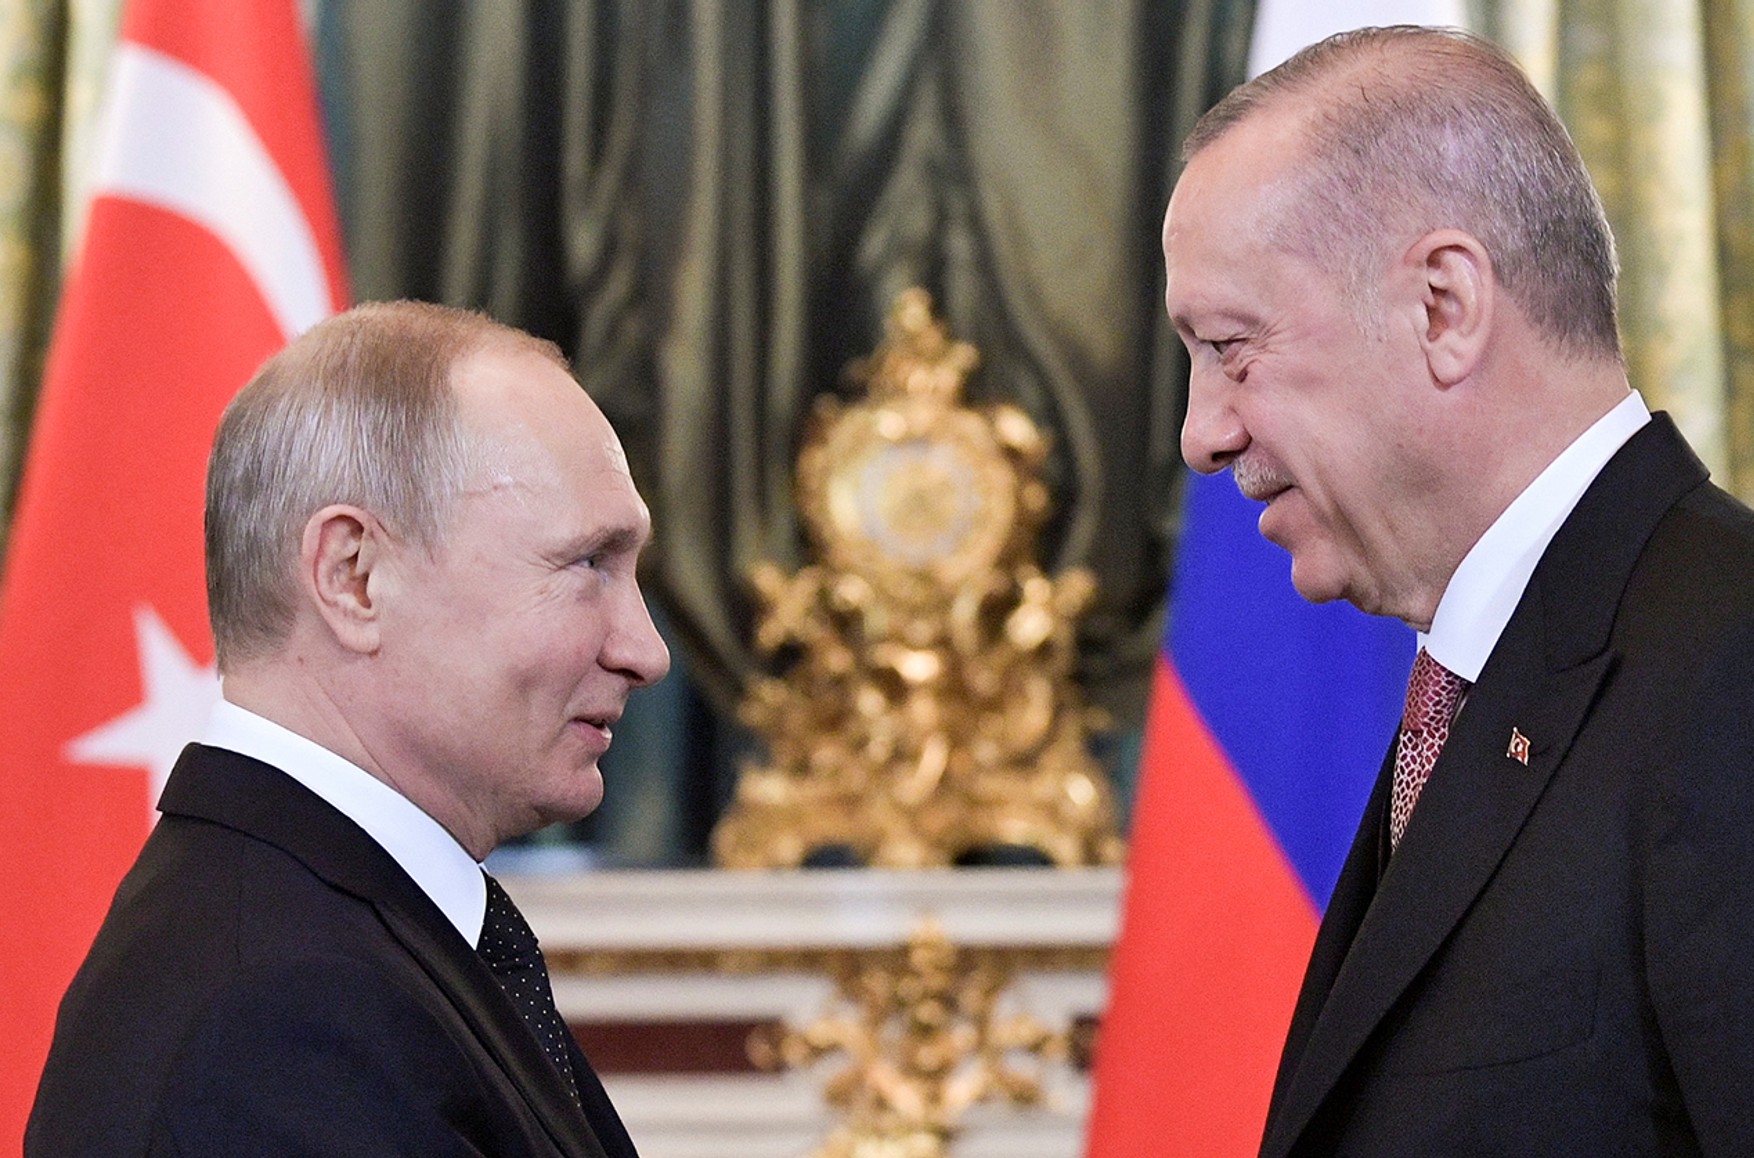 Ще 6 квітня Росія не планувала припиняти авіасполучення з Туреччиною. Все змінилося після заяву Ердогана про Крим